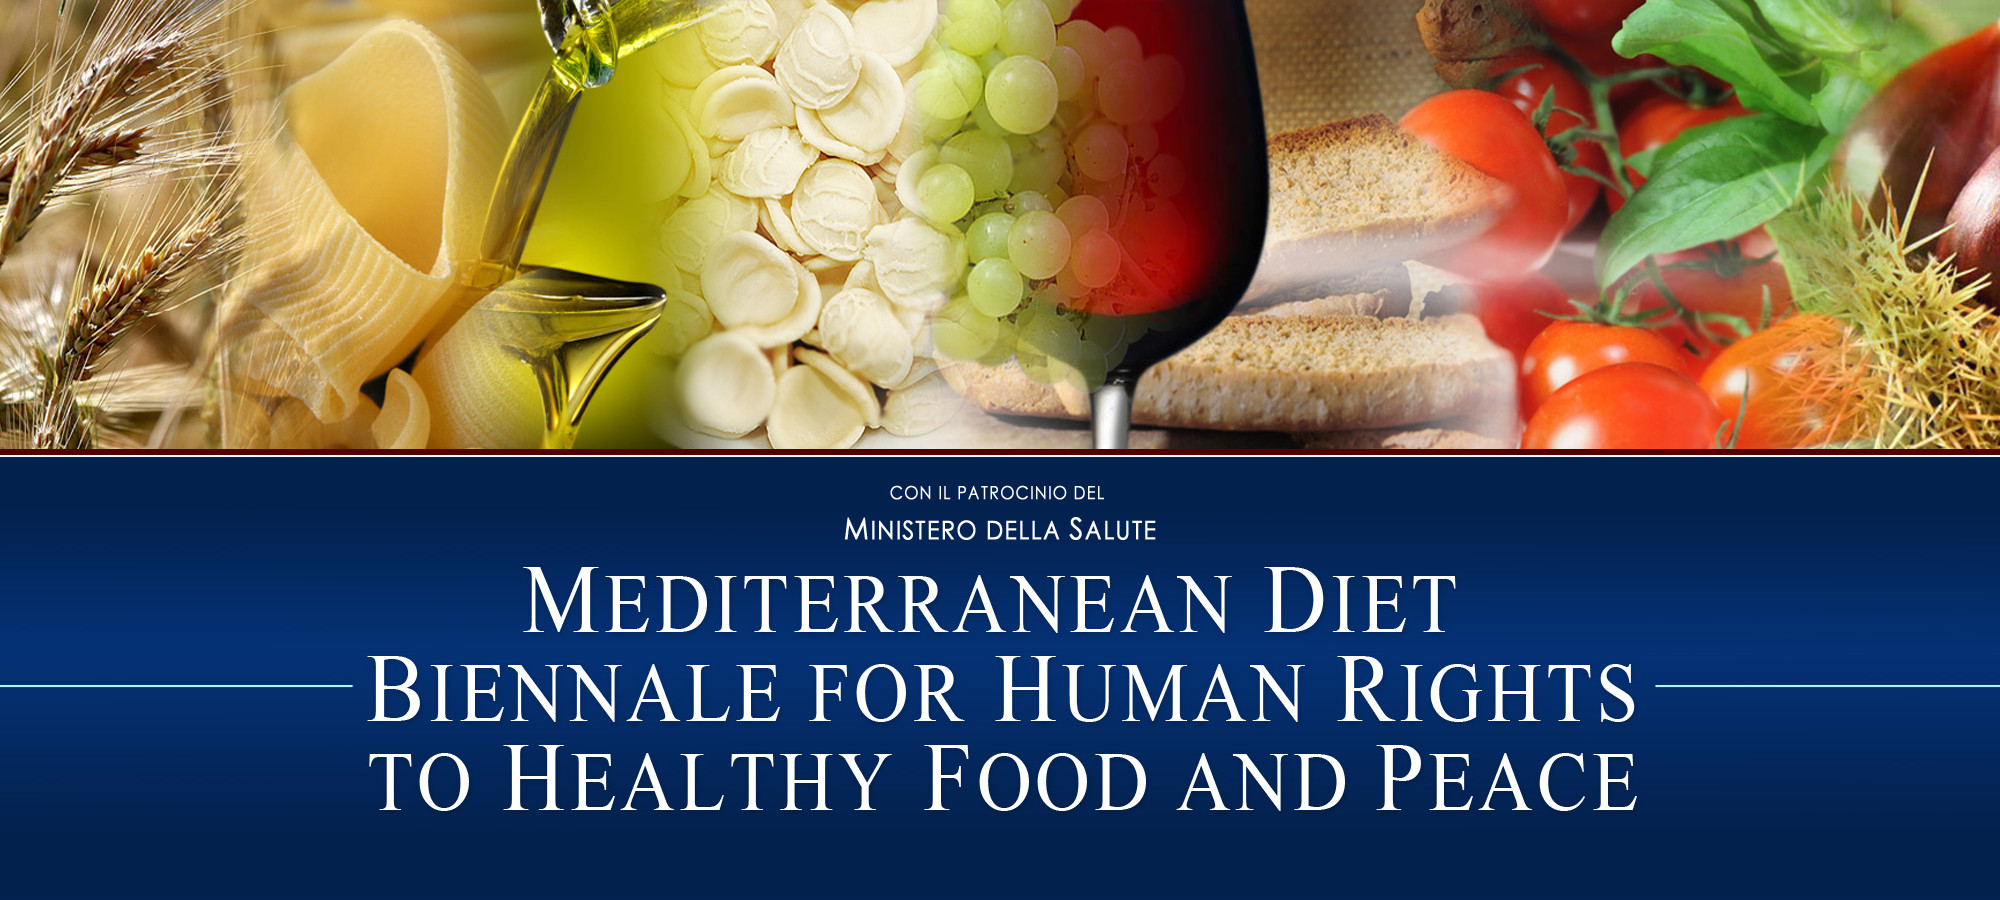 Biennale Dieta Mediterranea per i Diritti Umani la Cibo Sano e alla Pace